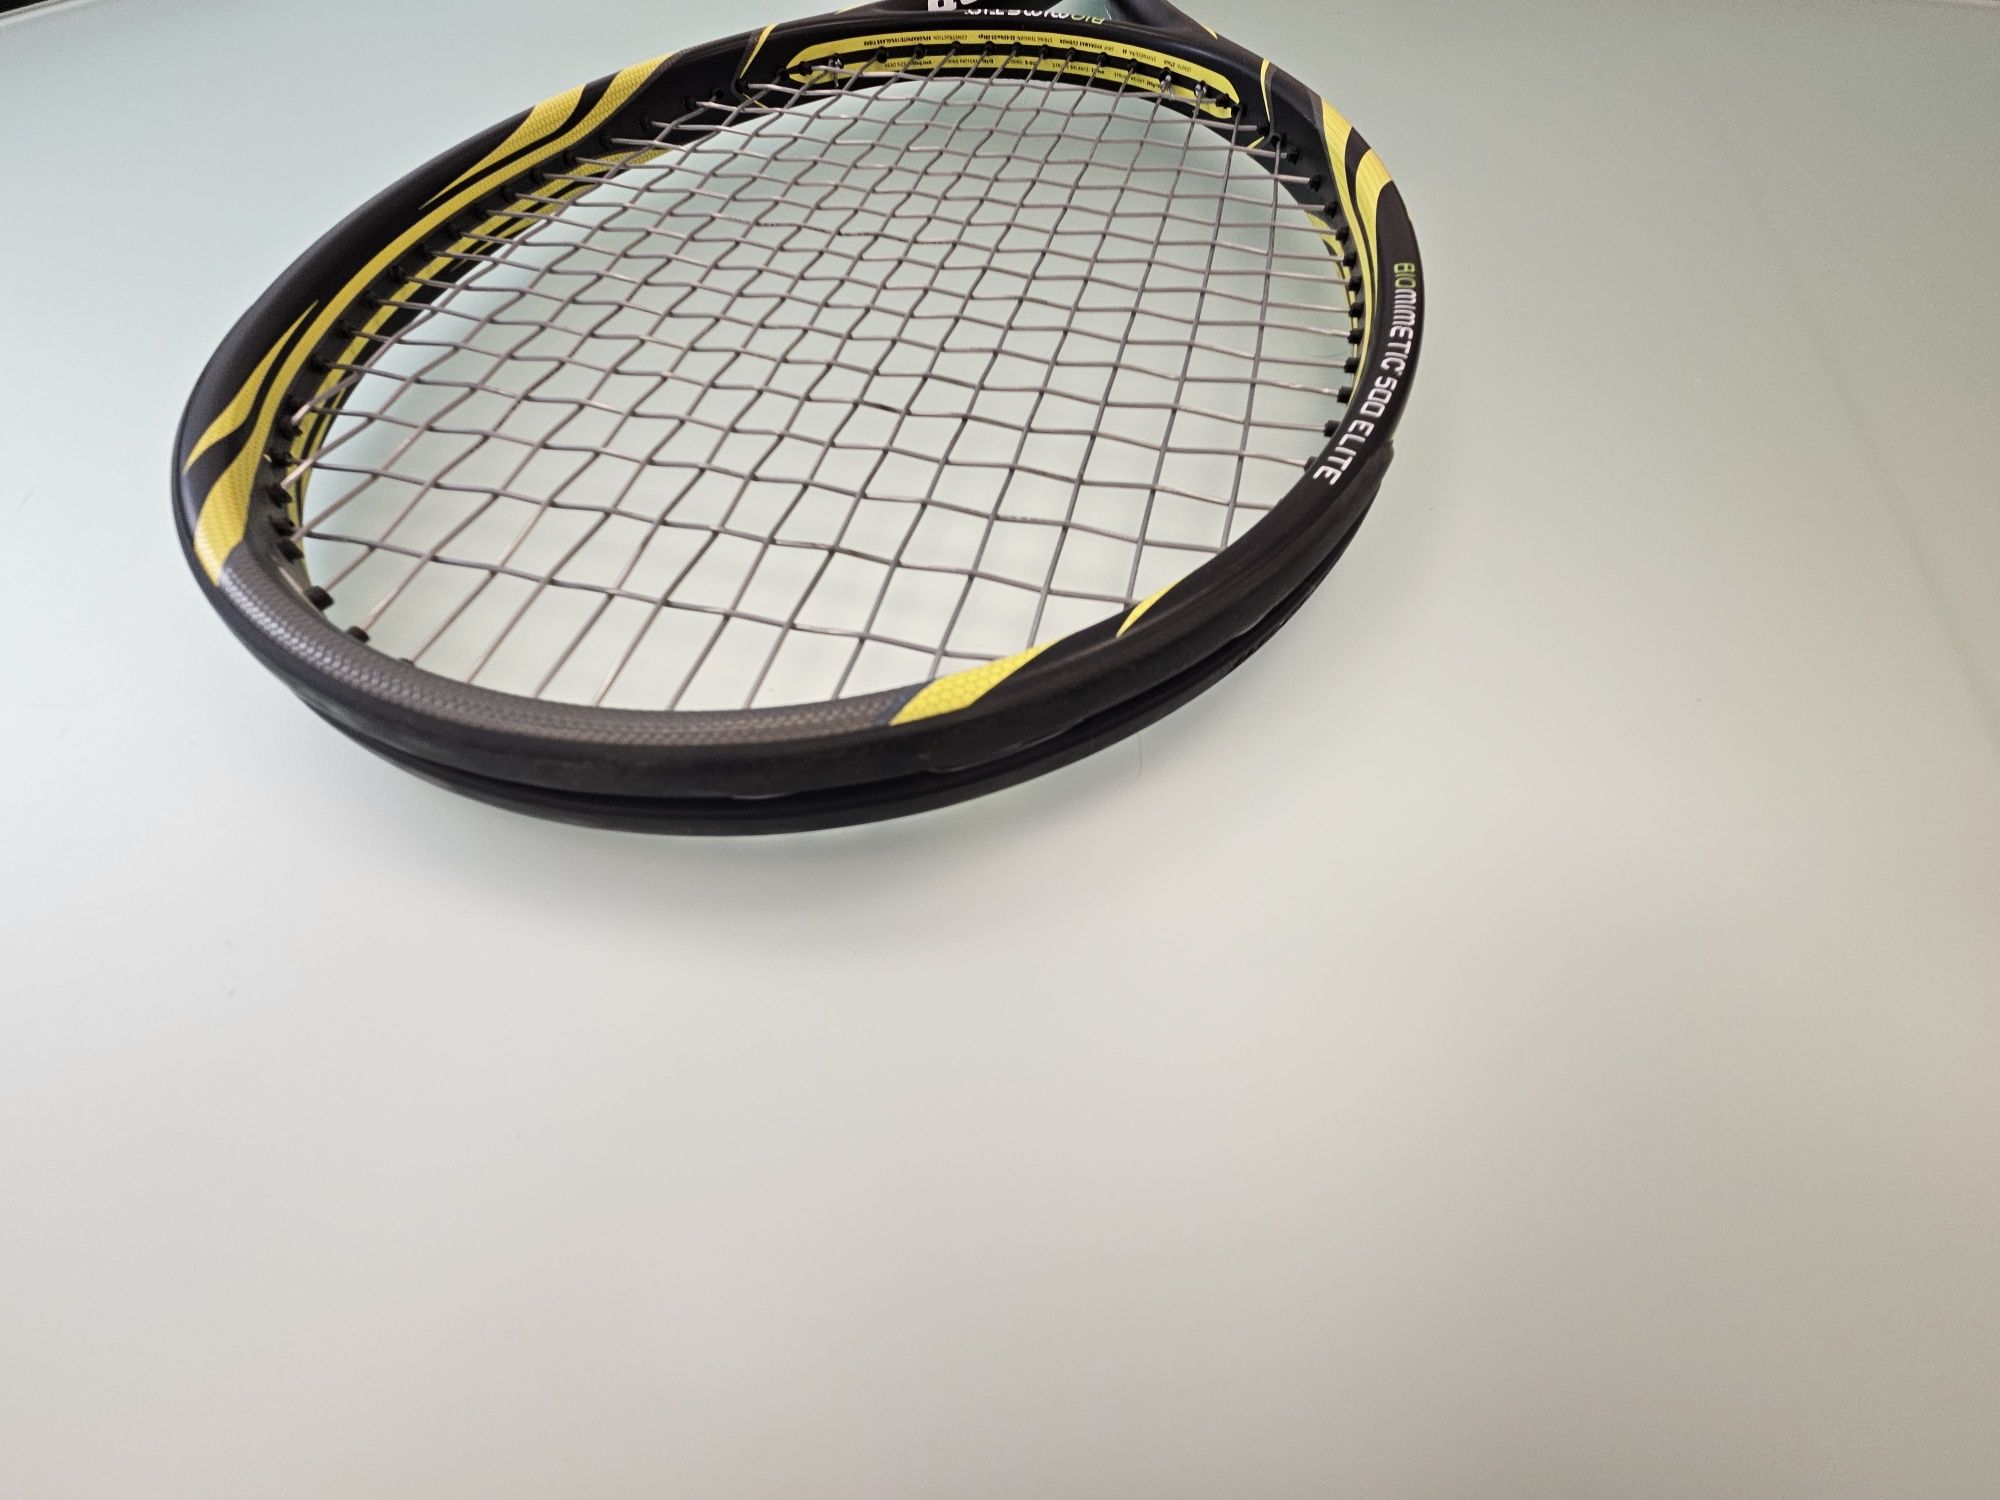 Тенис ракета DINLOP biomimetic 500 elite